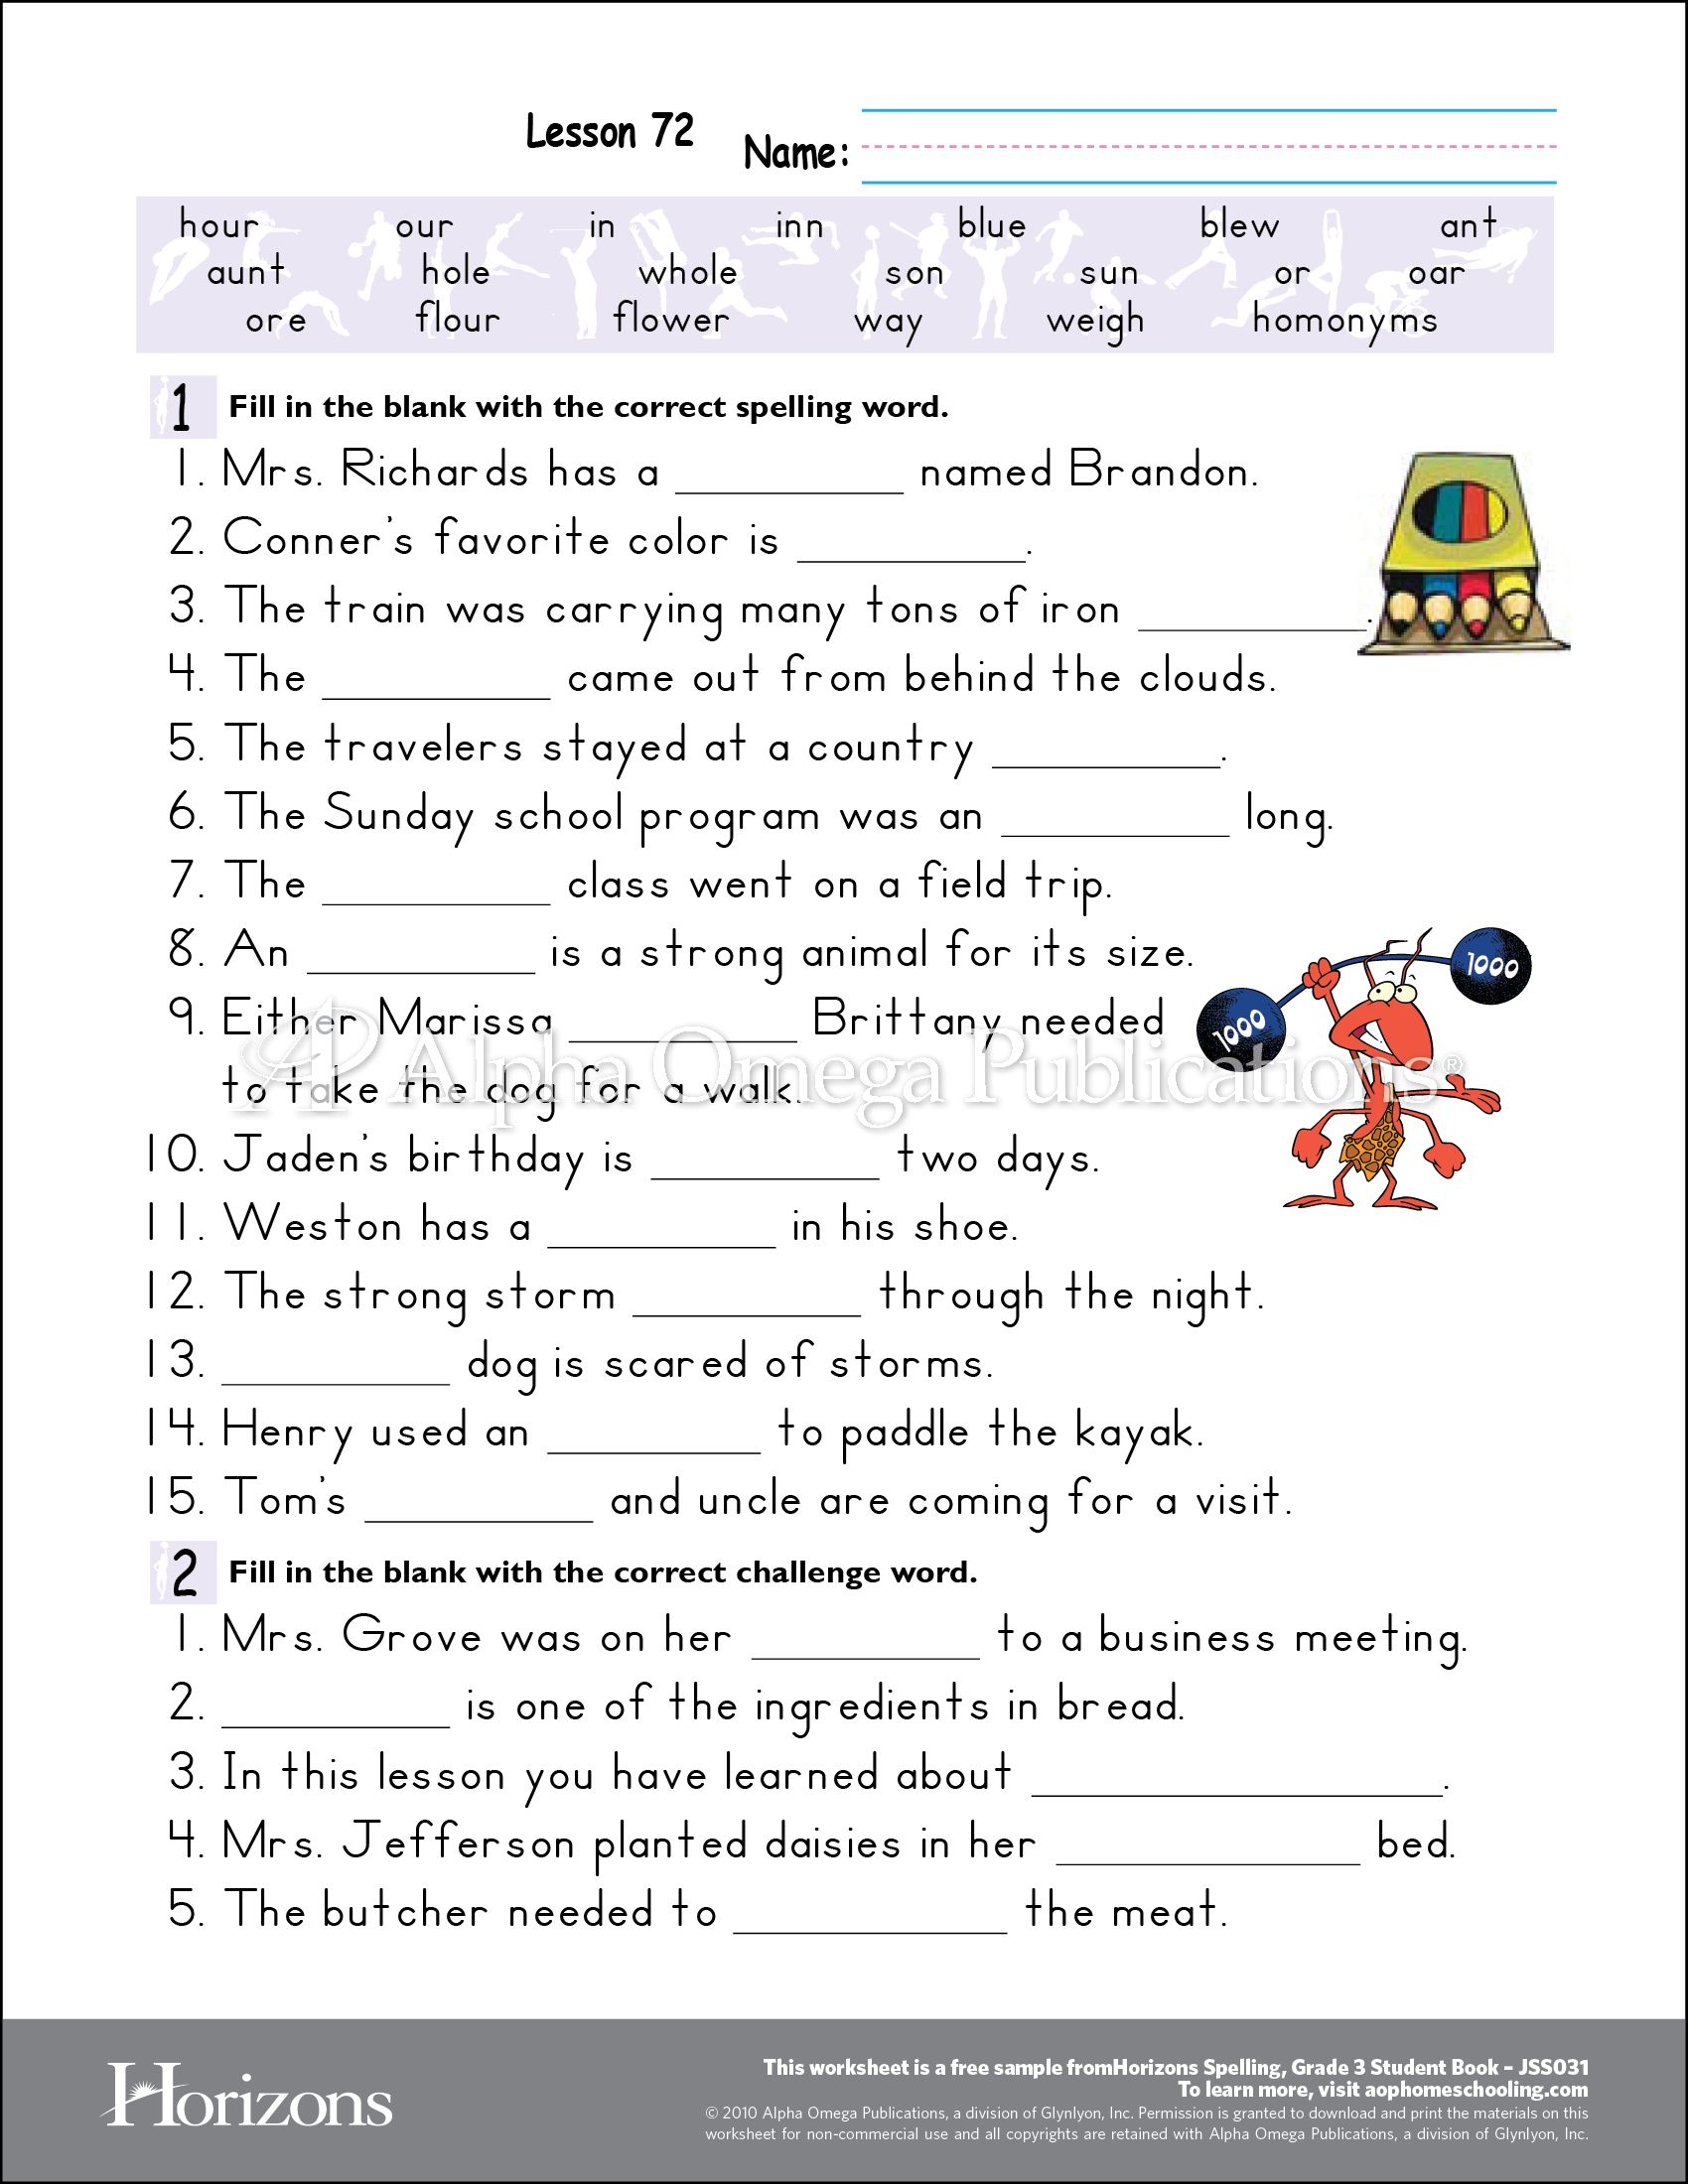 Aop Horizons Free Printable Worksheet Sample Page Download For | Free Homeschool Printable Worksheets